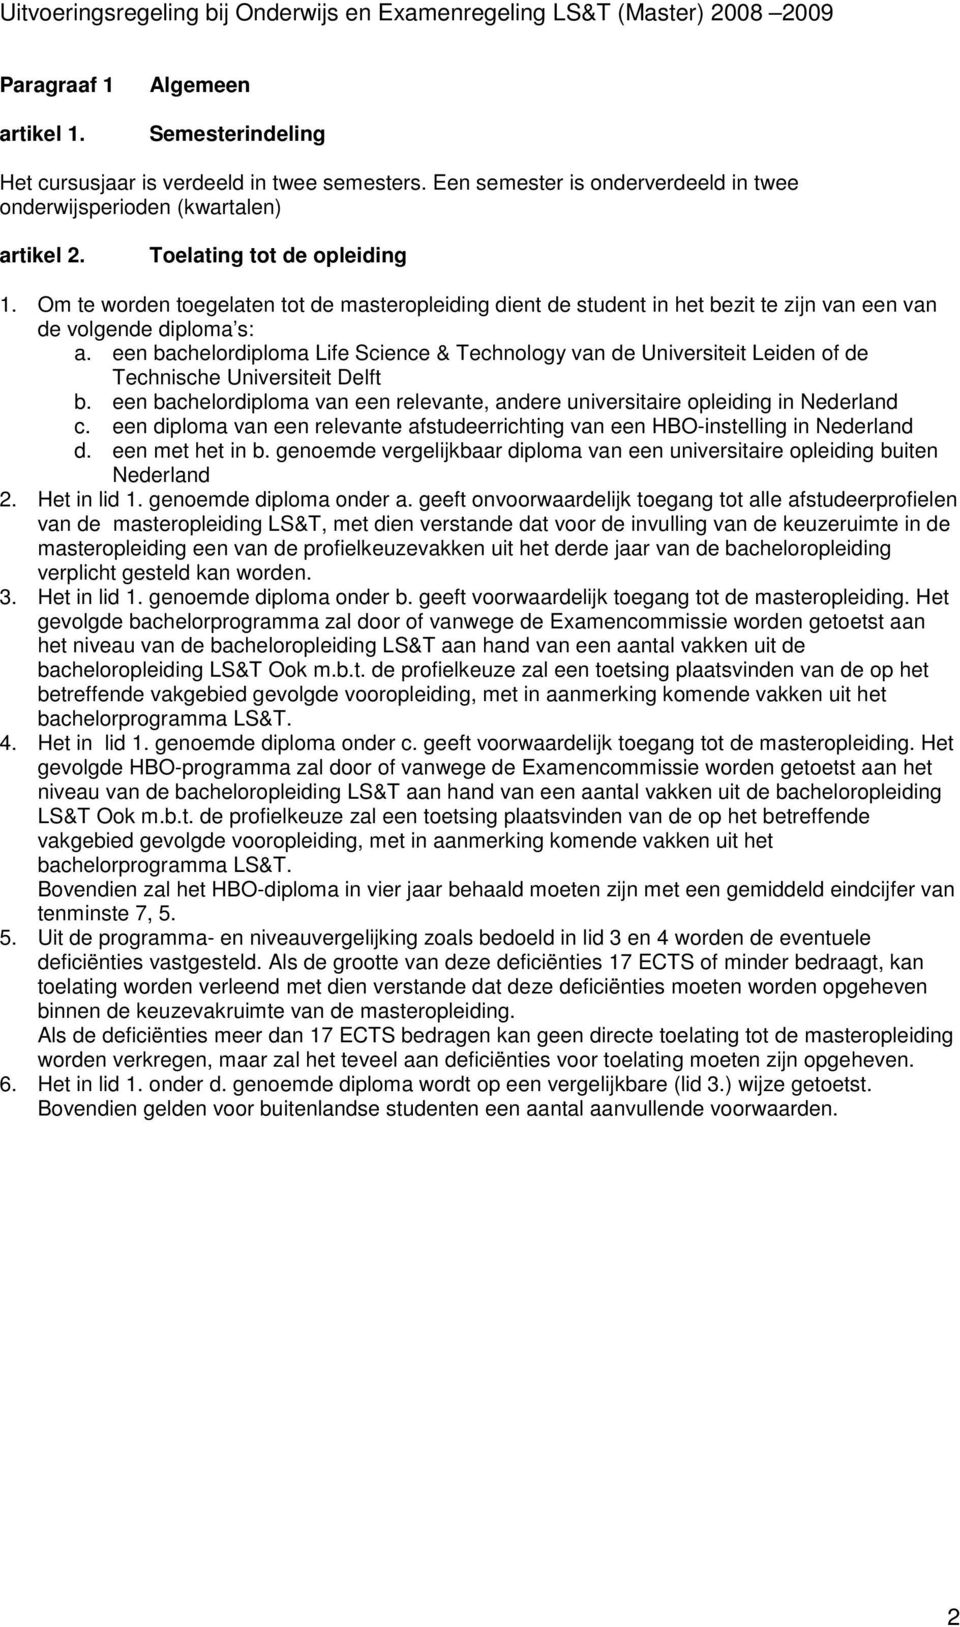 een bachelordiploma Life Science & Technology van de Universiteit Leiden de Technische Universiteit Delft b. een bachelordiploma van een relevante, andere universitaire opleiding in Nederland c.